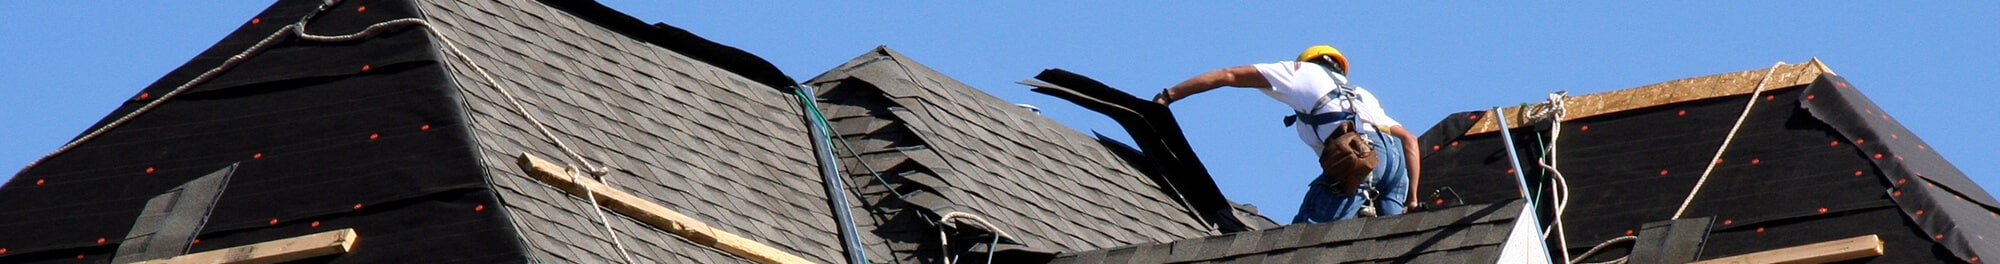 Racine County roof replacement - Franklin, Oak Creek, Racine, Kenosha